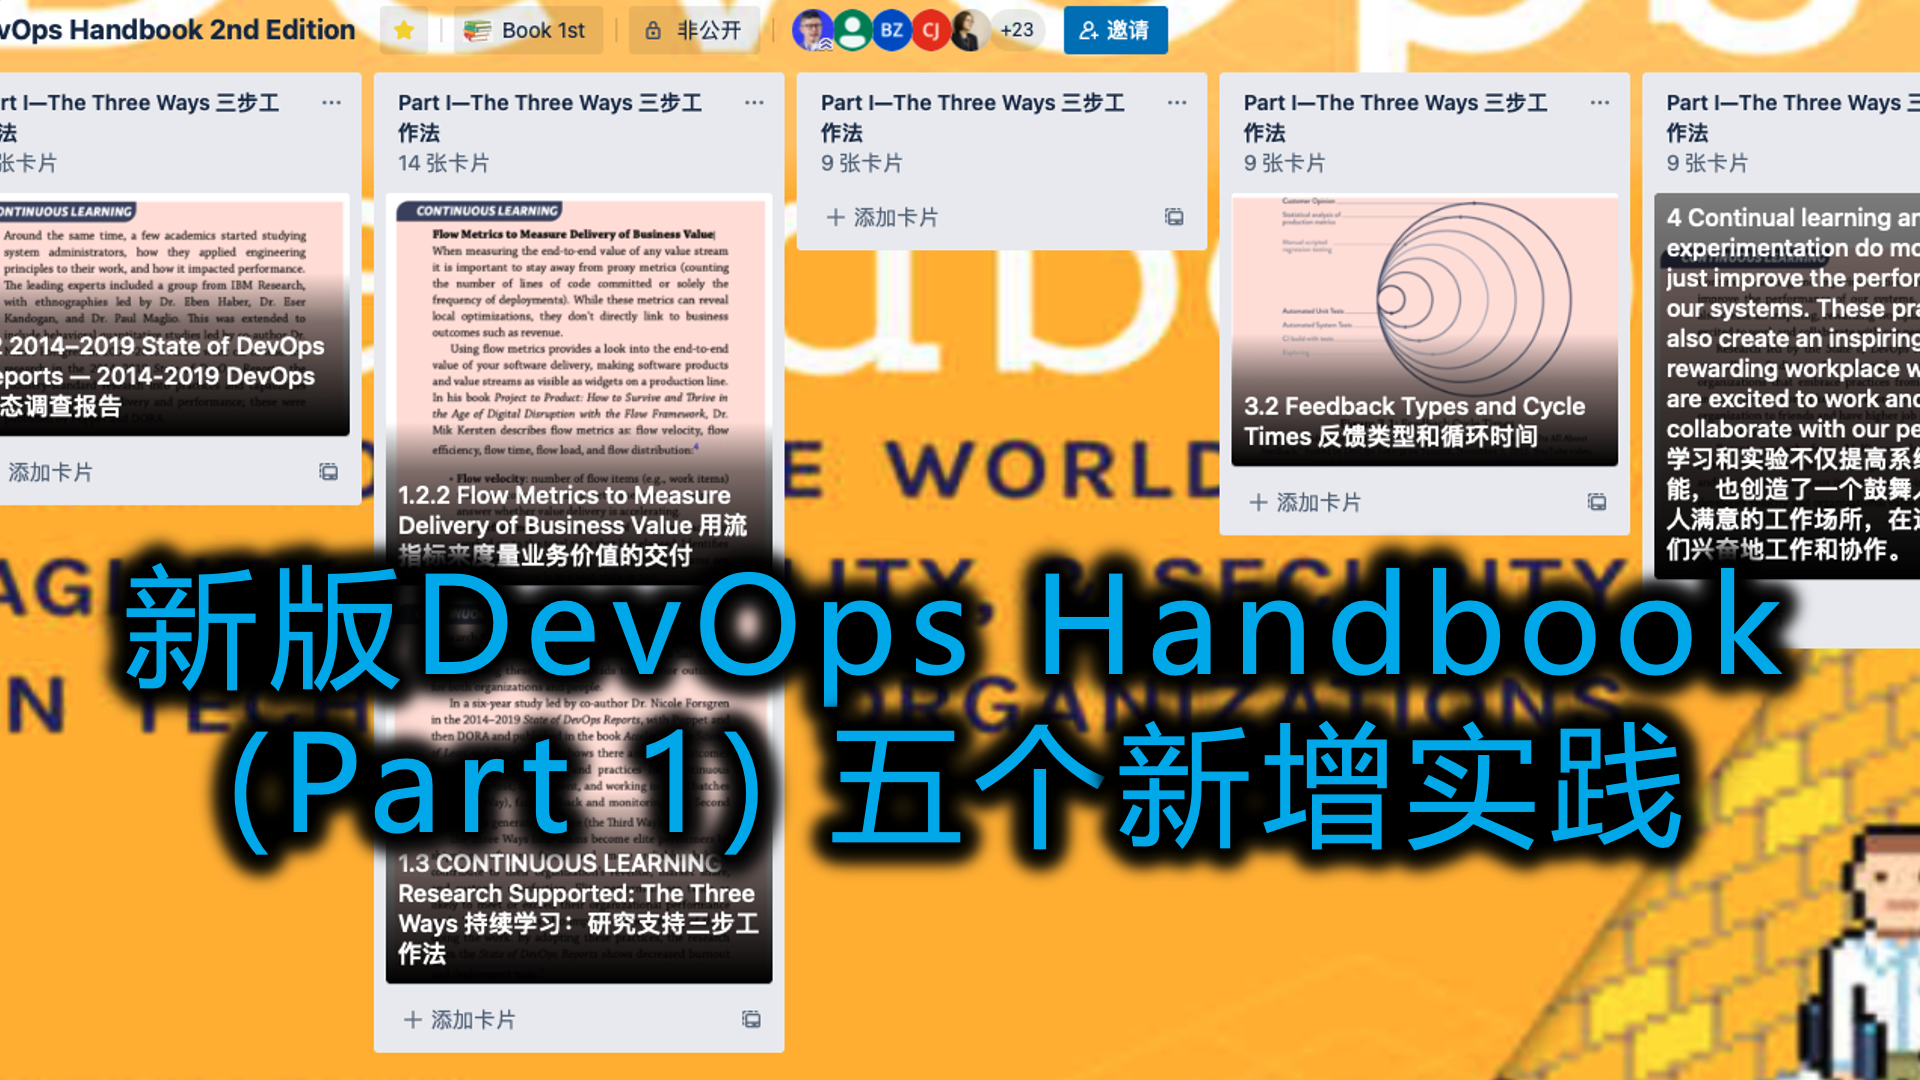 新版DevOps Handbook (Part 1) 五个新增实践